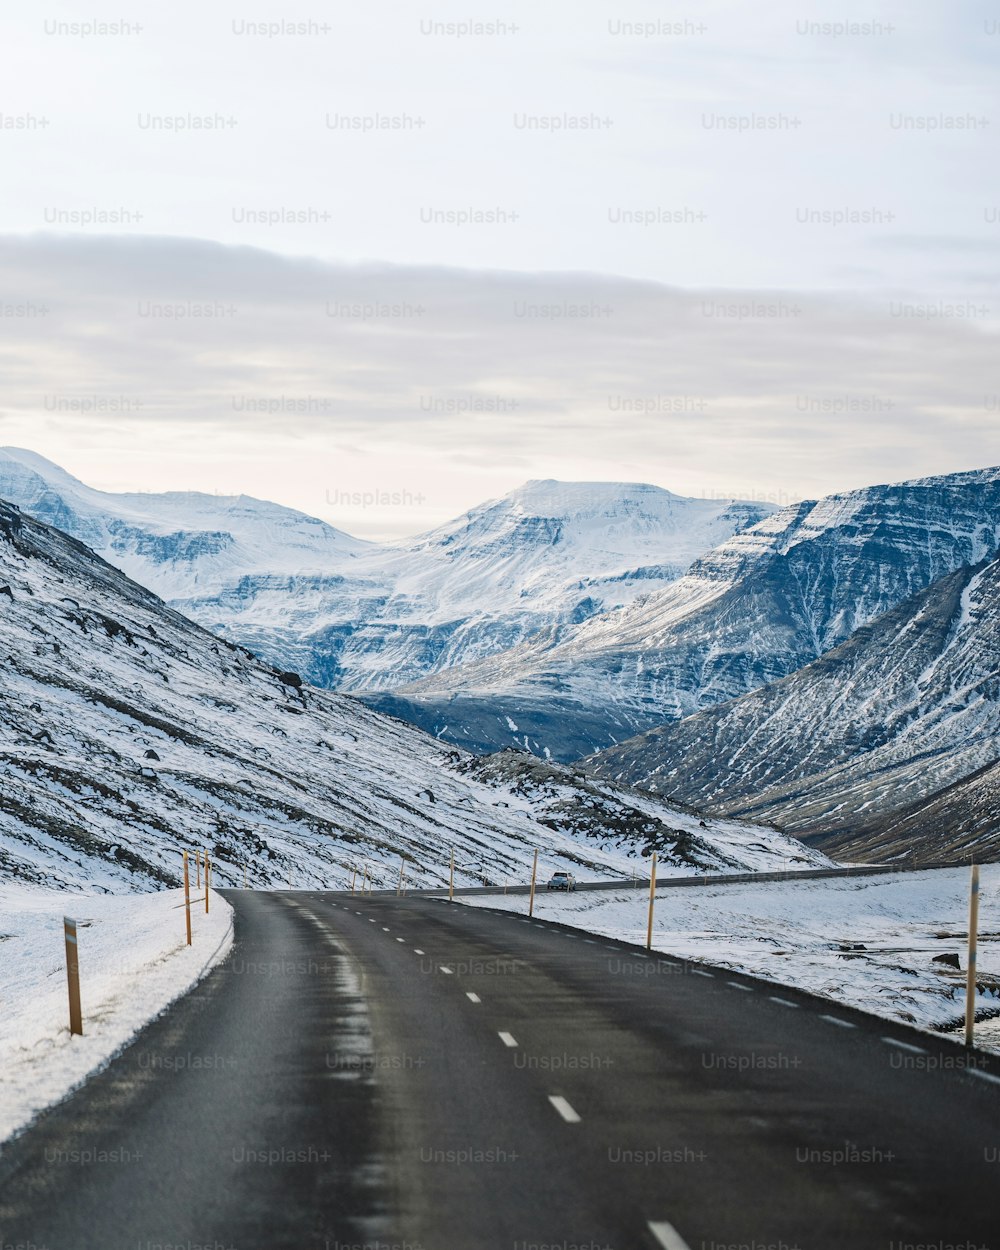 Eine Straße inmitten einer schneebedeckten Bergkette